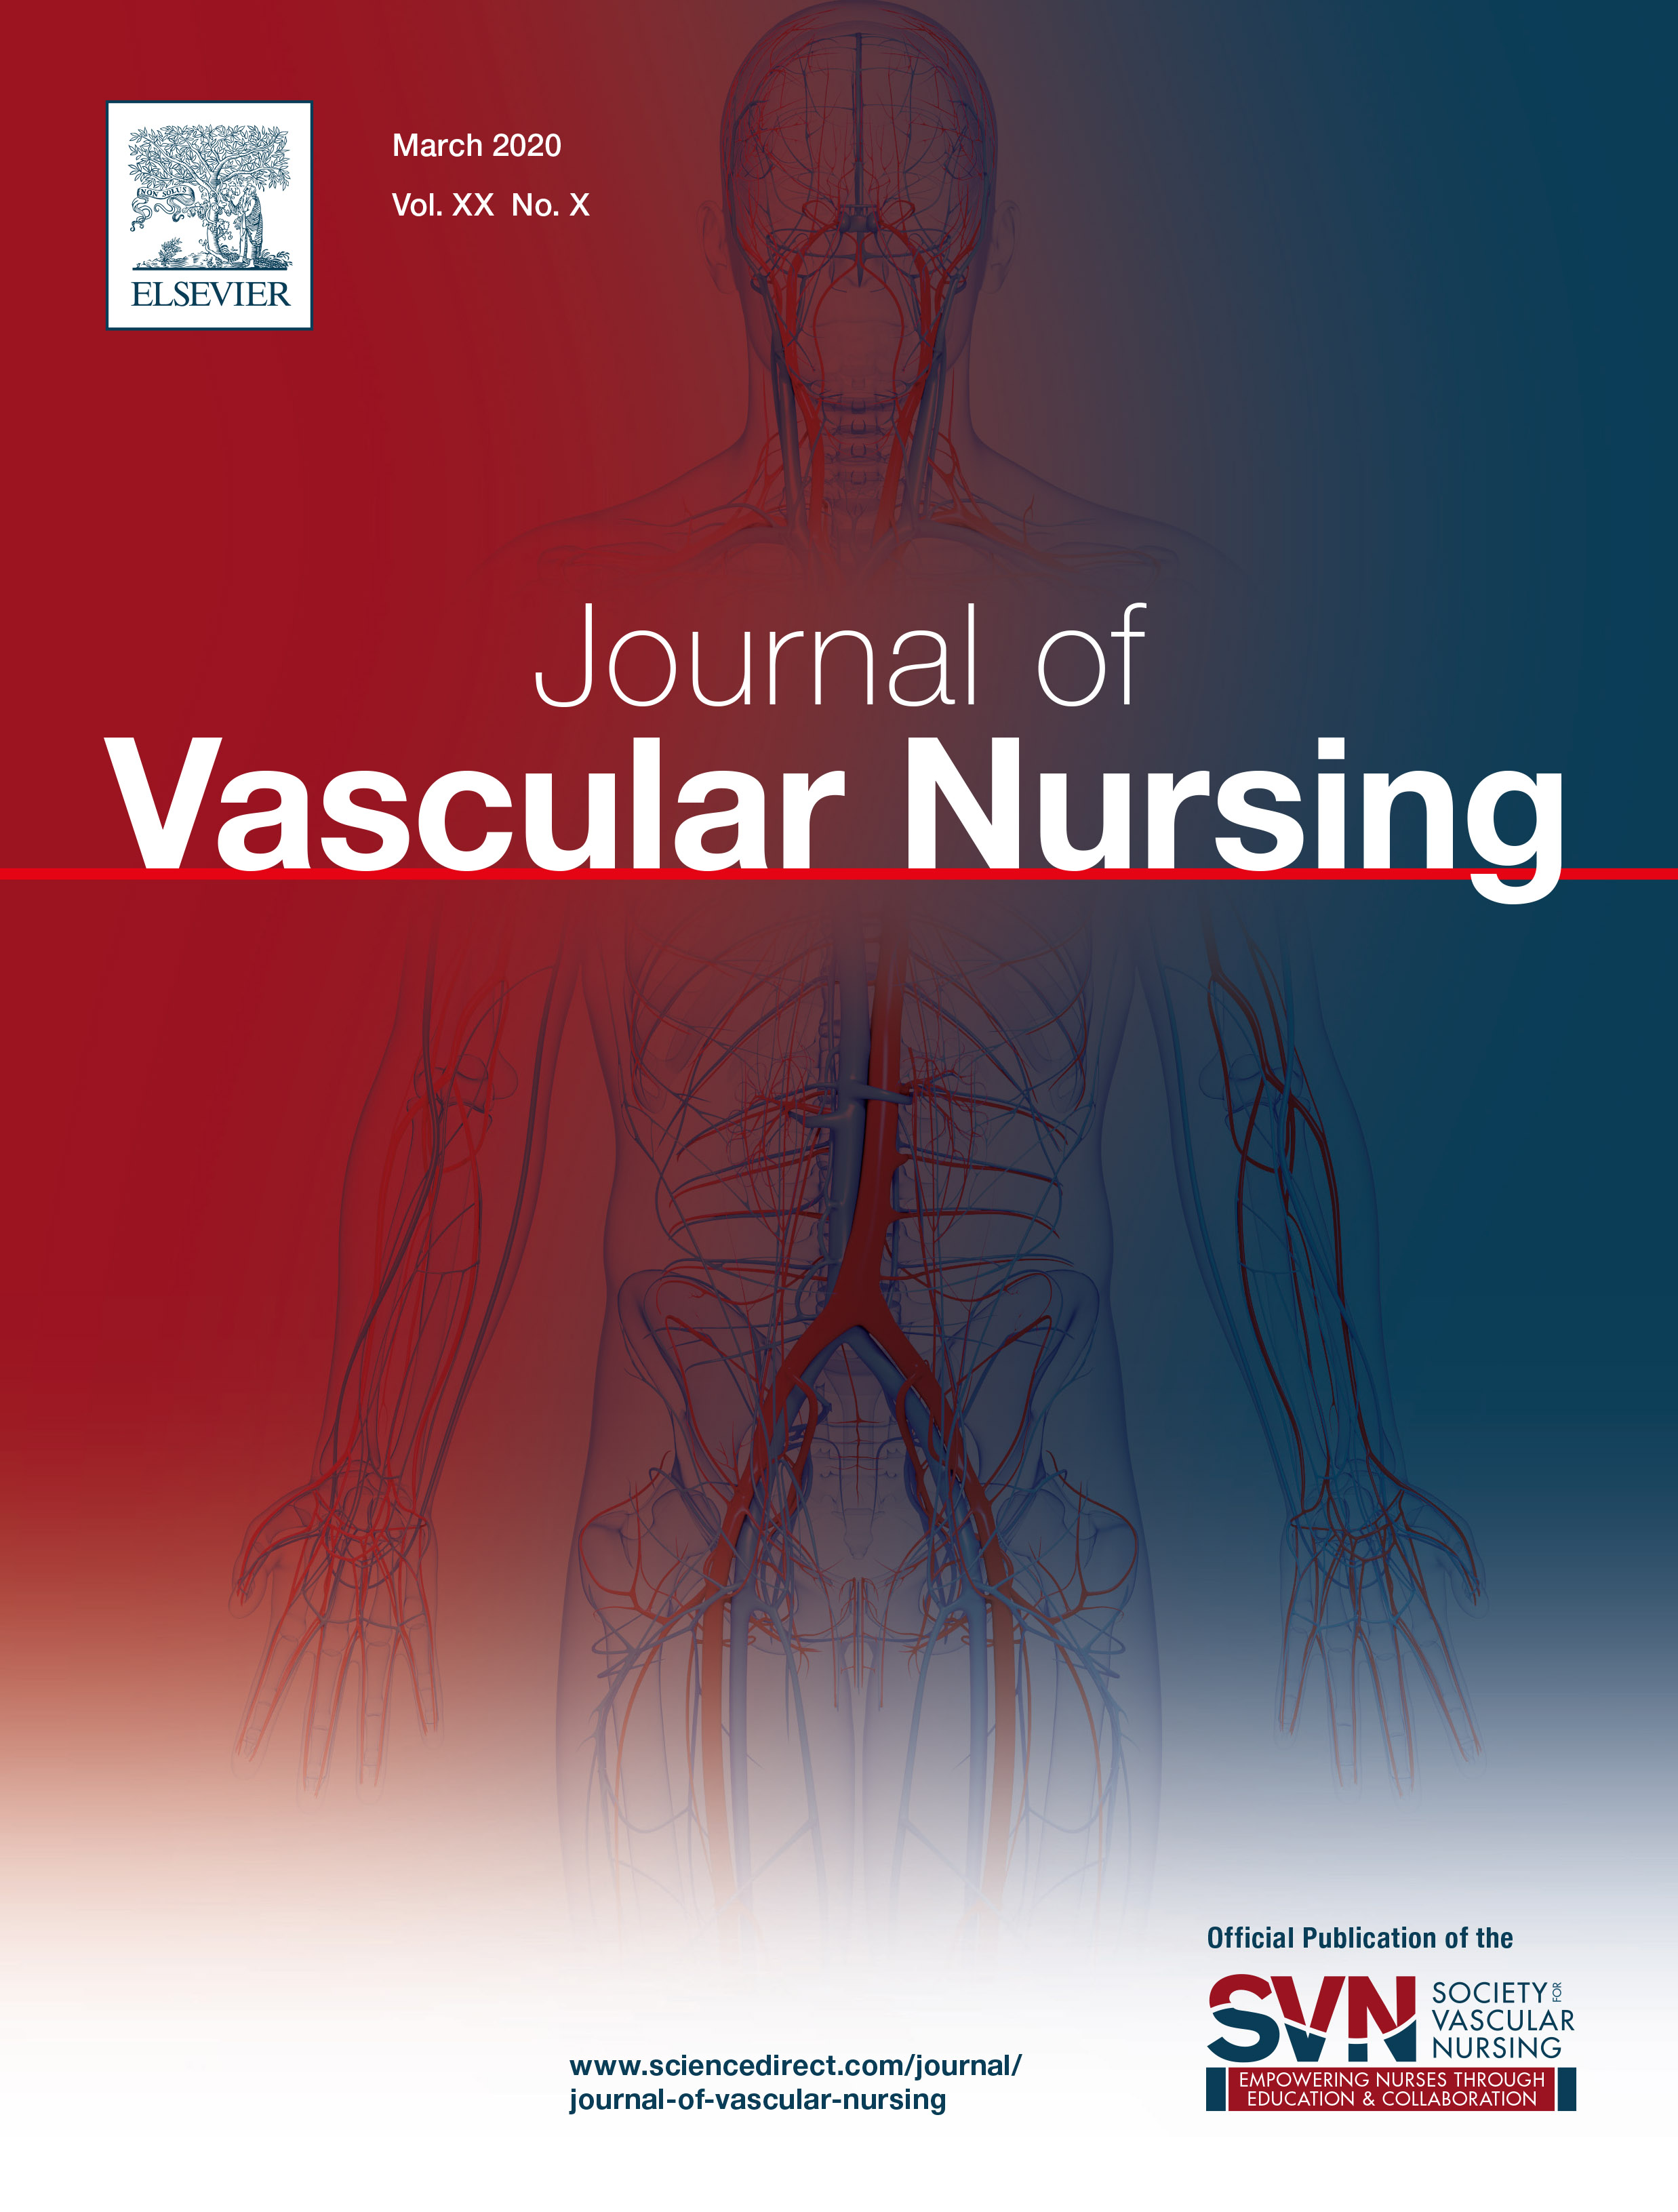 Journal of Vascular Nursing